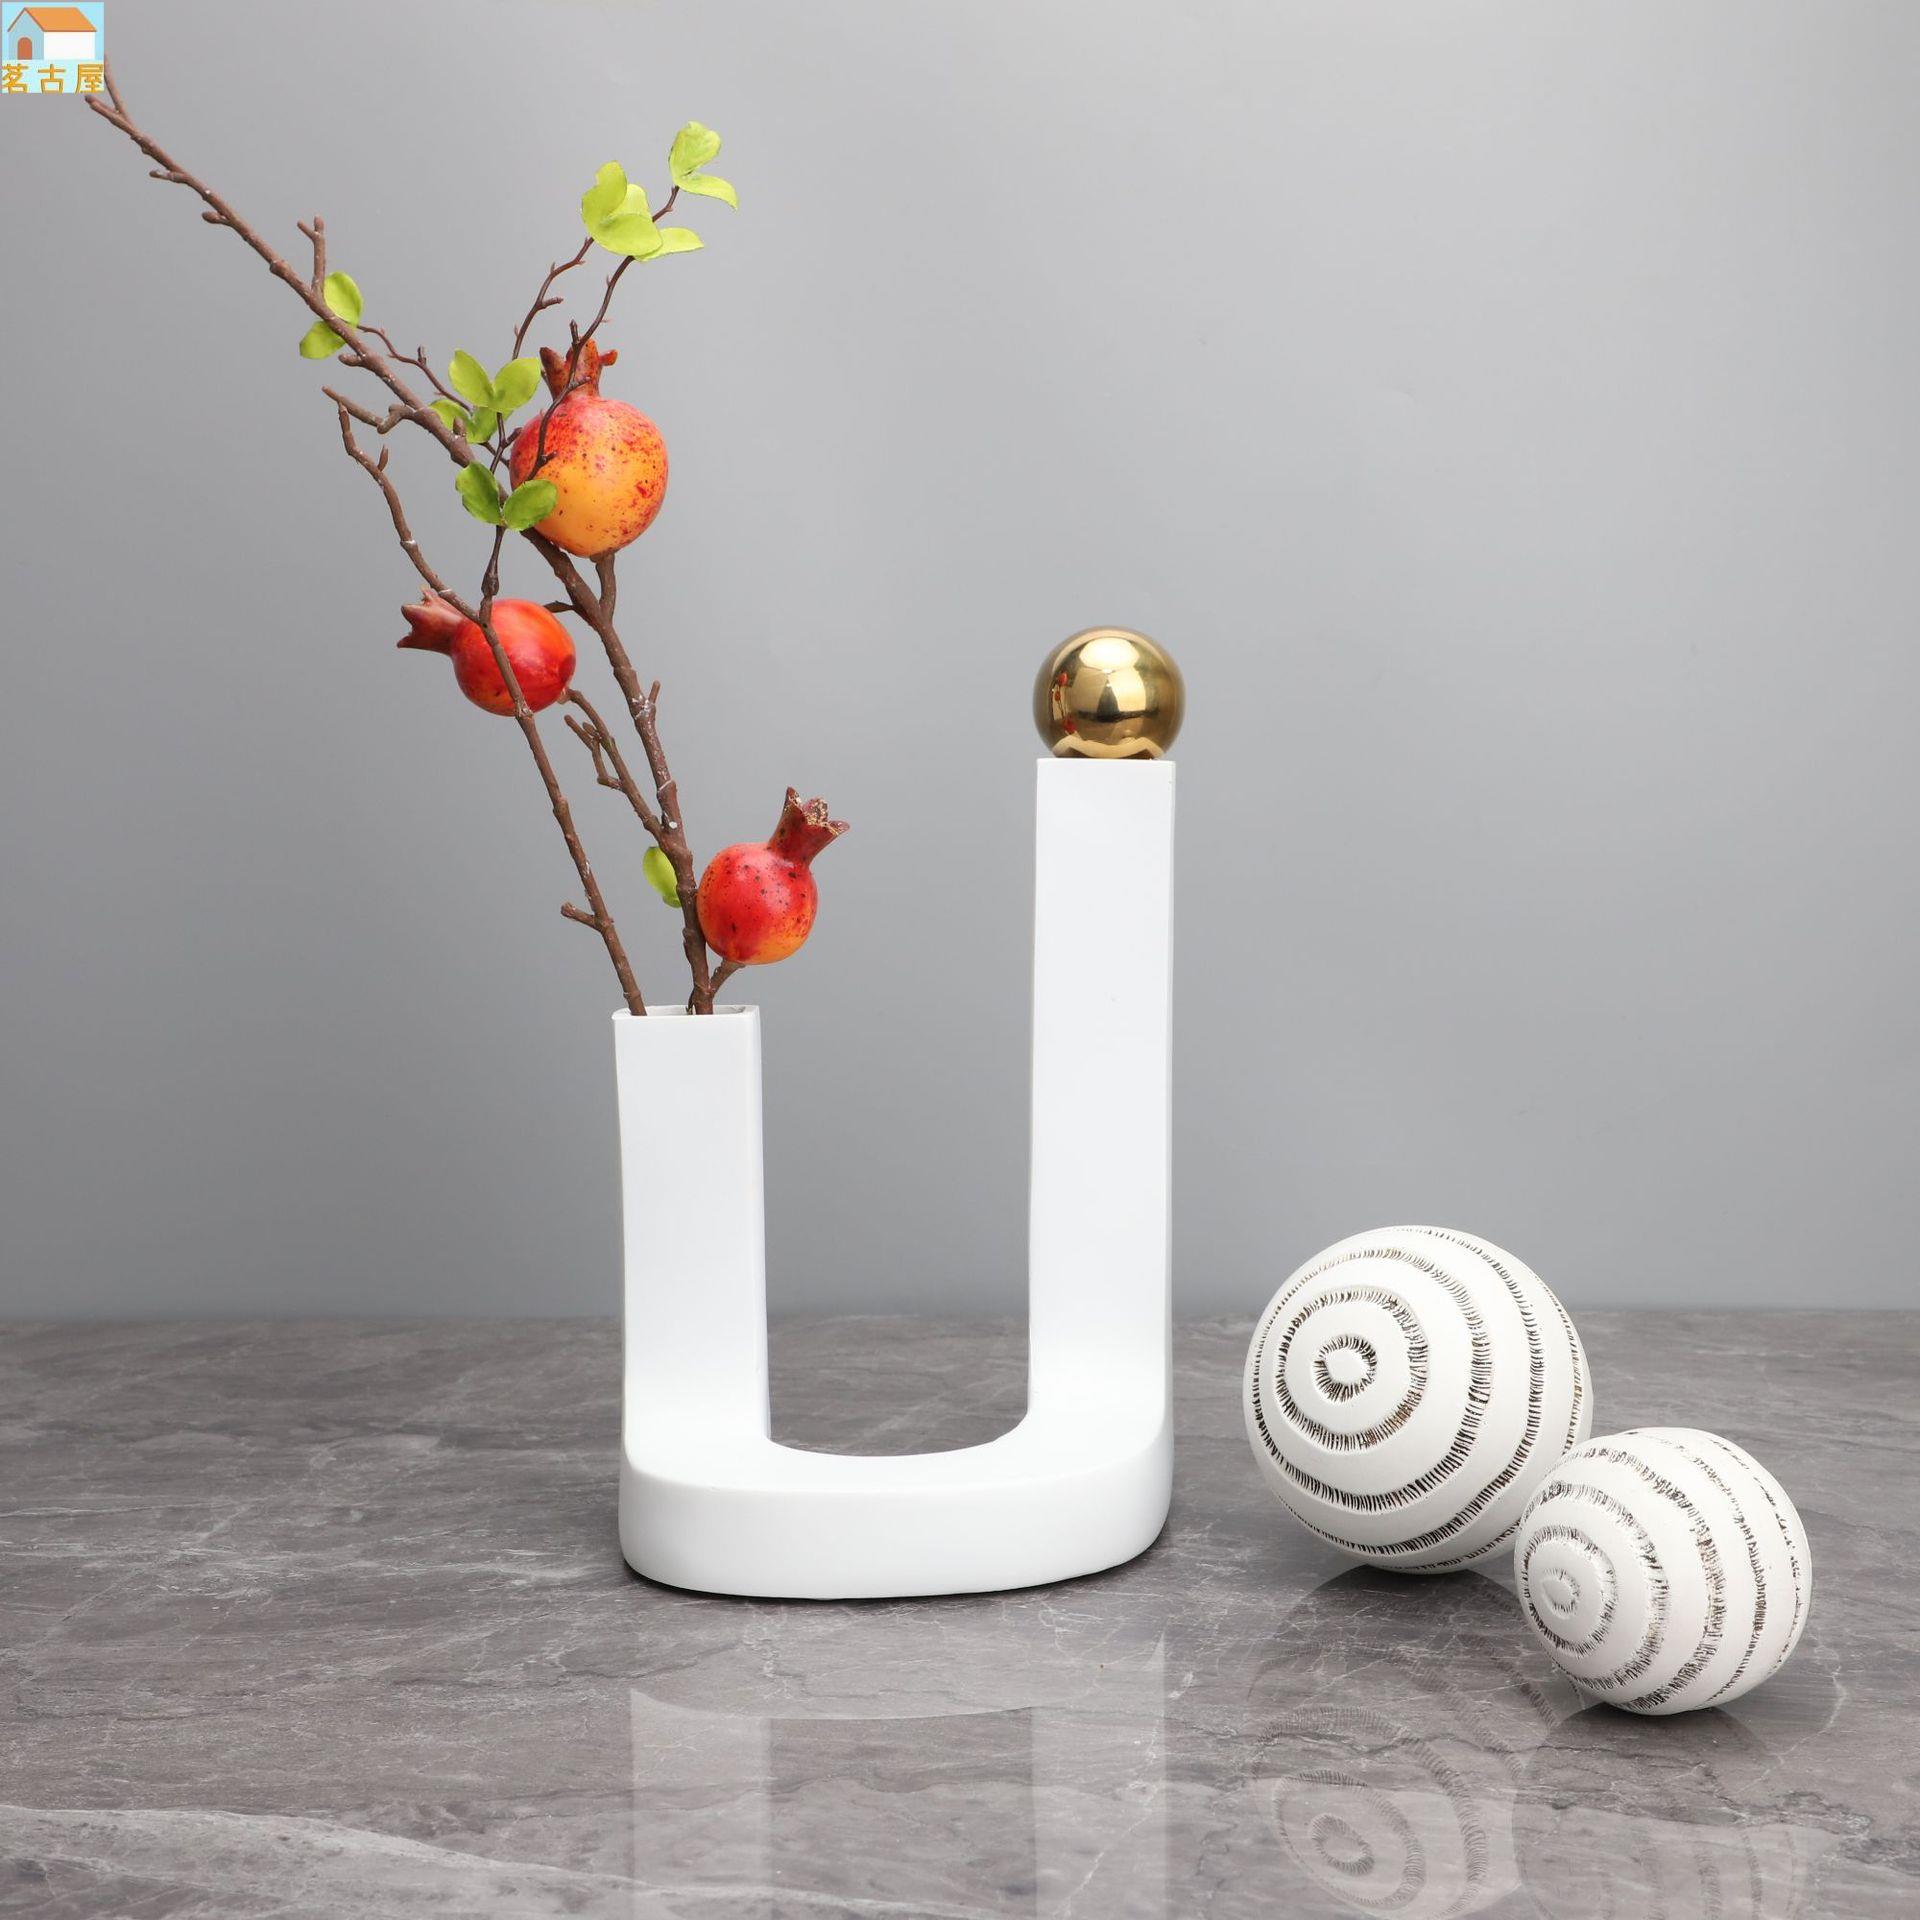 現代簡約創意U形白色樹脂花器樣板房辦公室家居客廳裝飾花瓶擺件